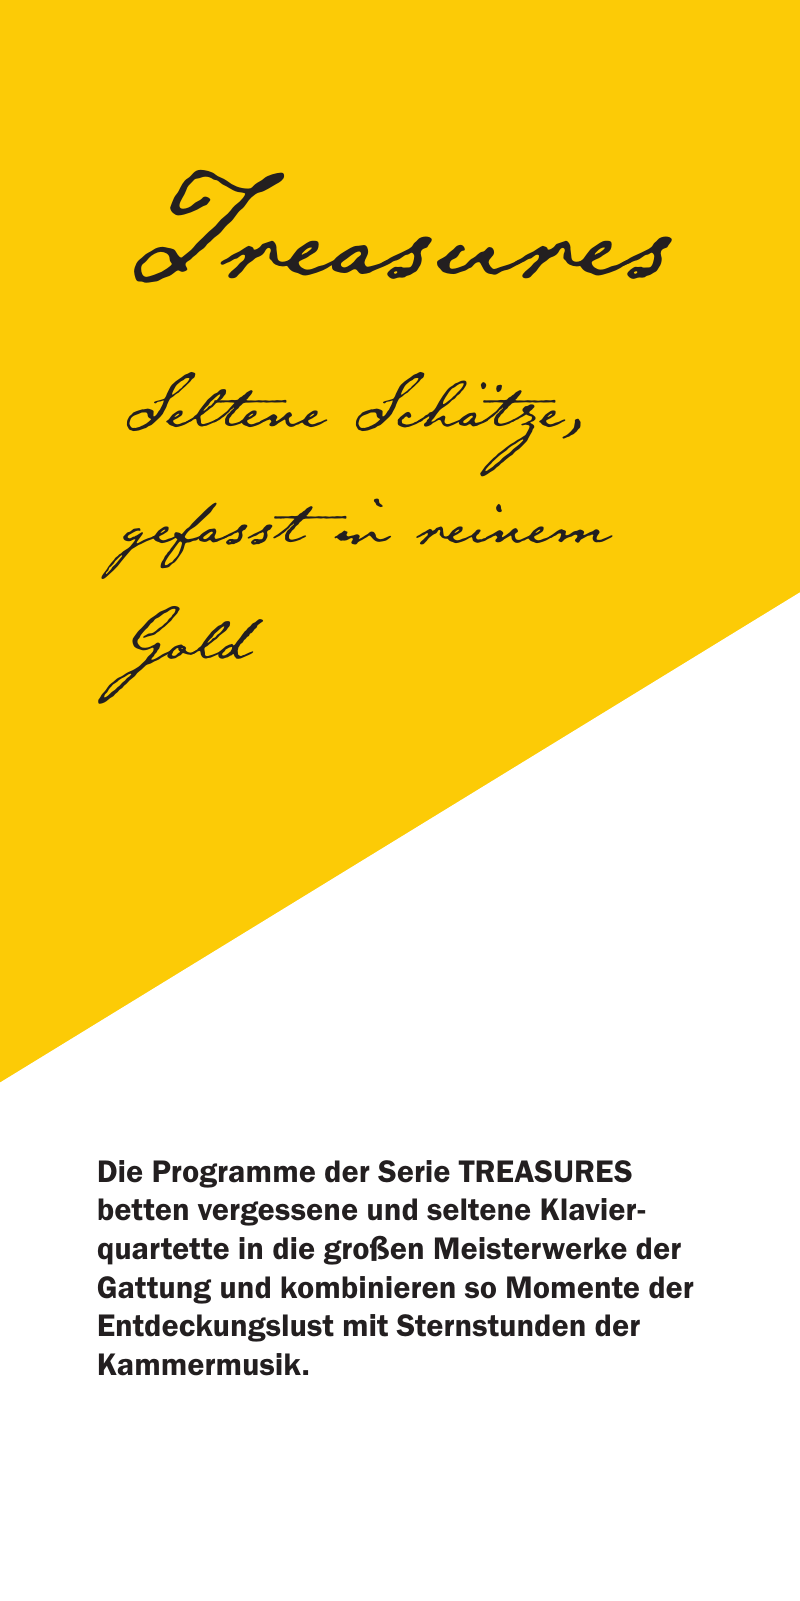 Vorschau Notos Quartett Programme 18/19/20 Seite 4